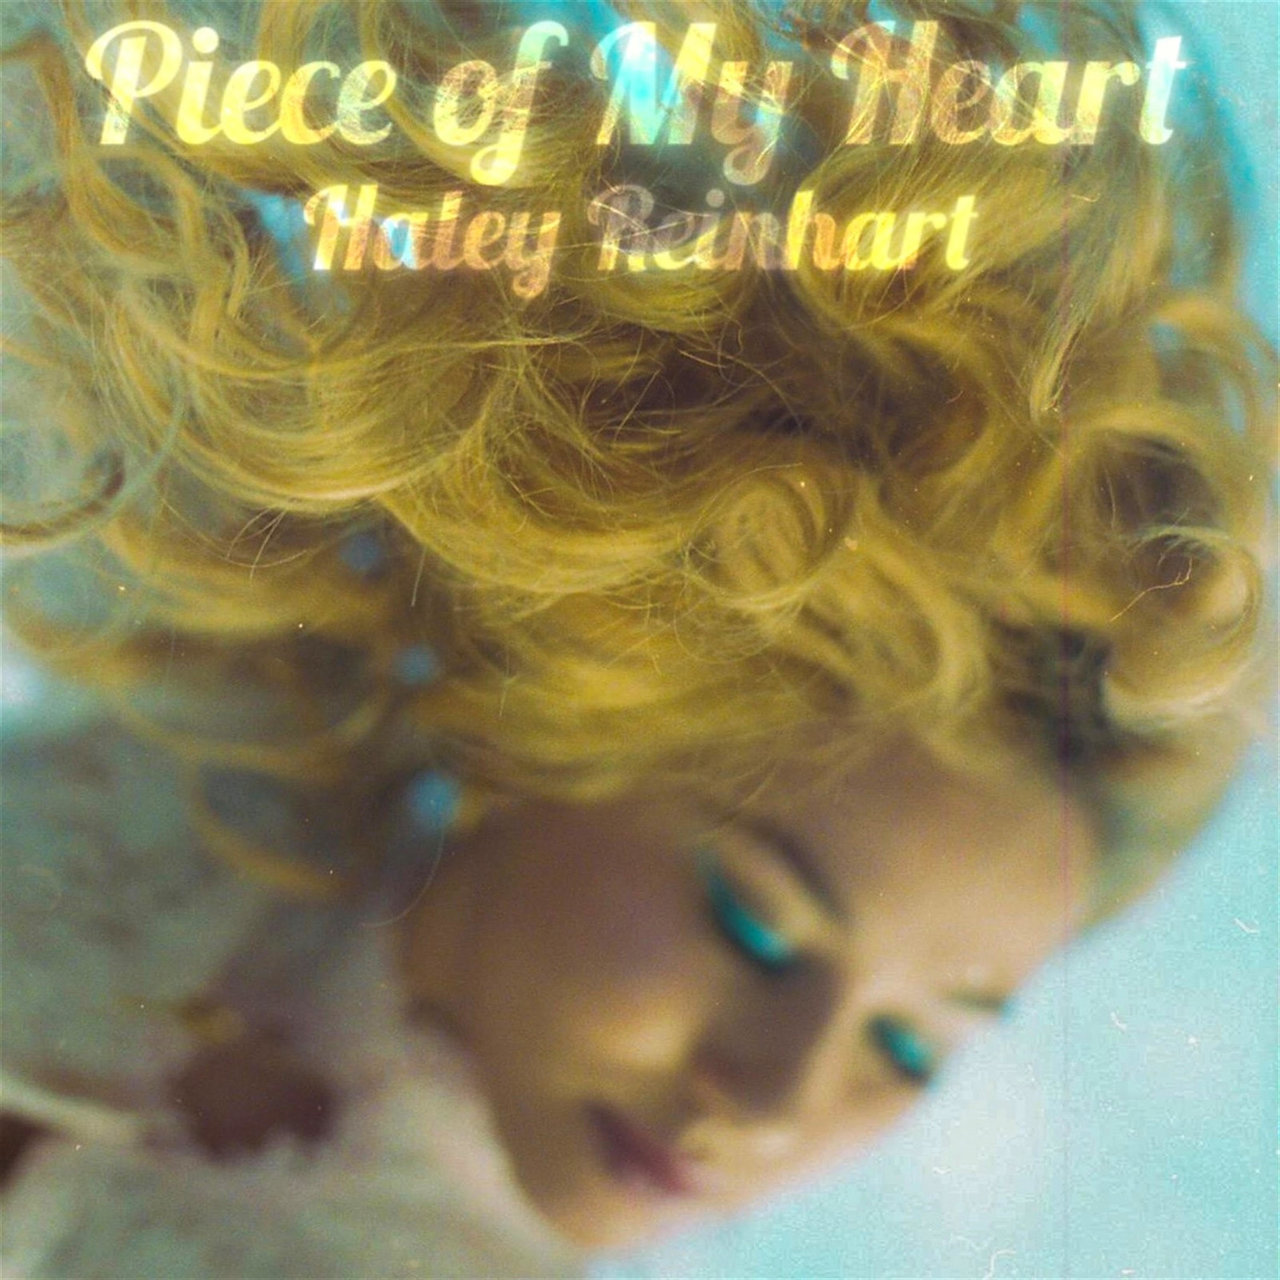 Haley Reinhart Piece of My Heart cover artwork